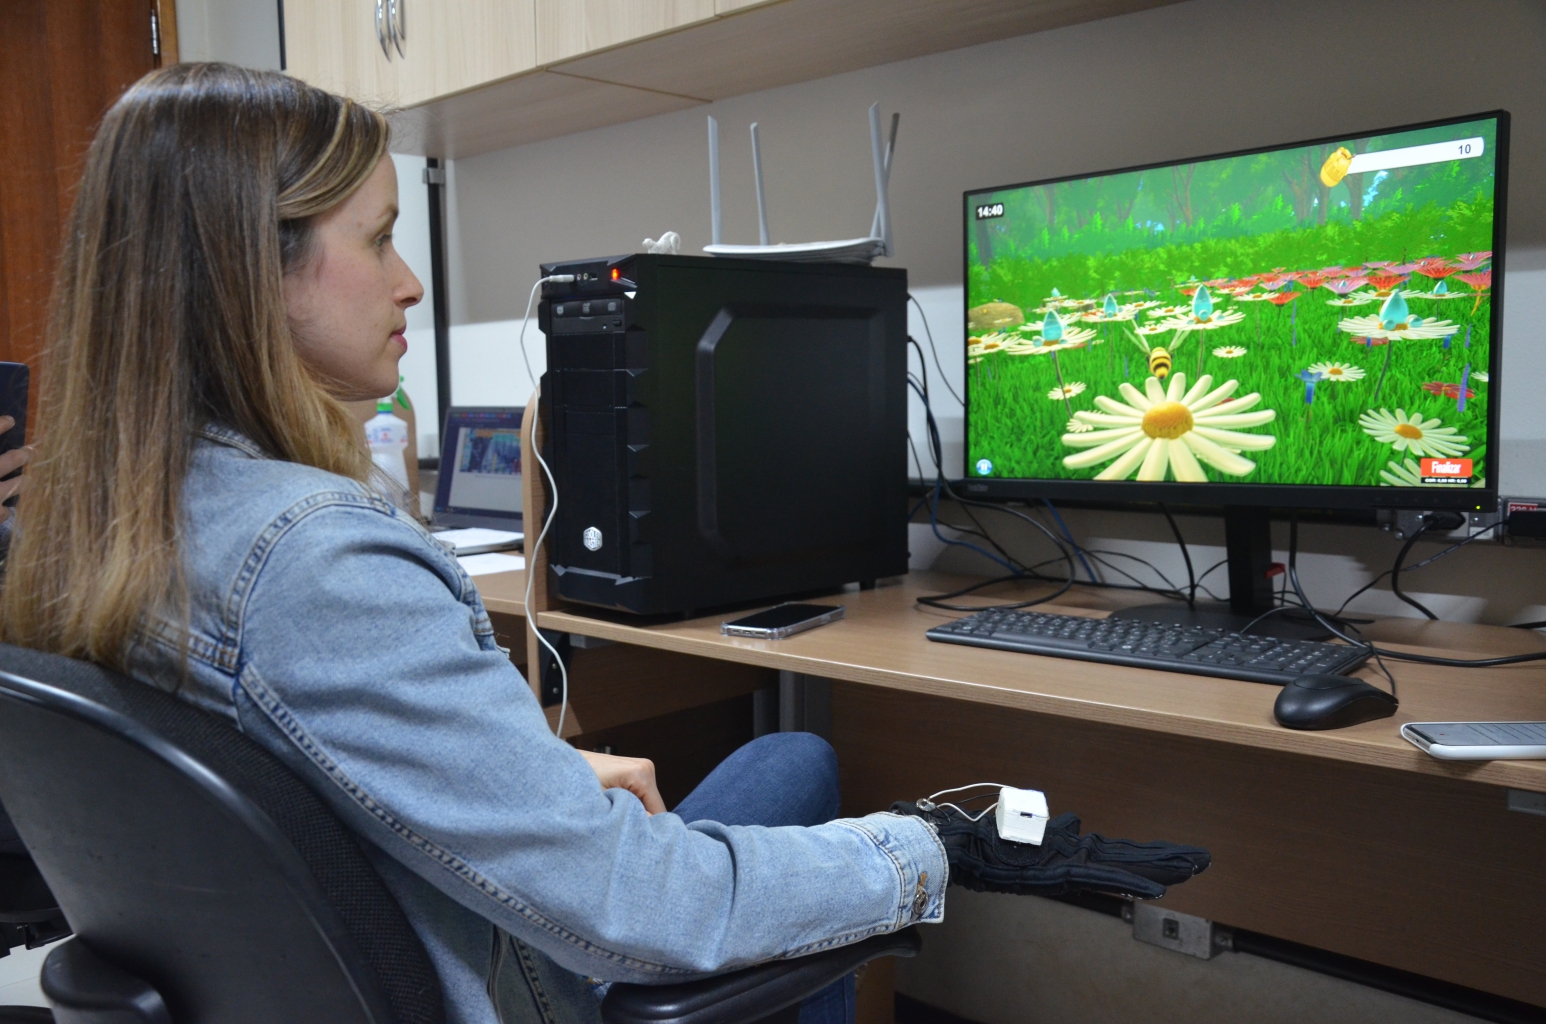 Mulher sentada em frente a uma tela de computador, que exibe imagens do jogo RehaBEElitation em tons verde e amarelo, além de abelhas e flores. Logo abaixo, está a mão e punho da mulher com uma luva vinculada ao game e 'conectada' por pequenos cabos